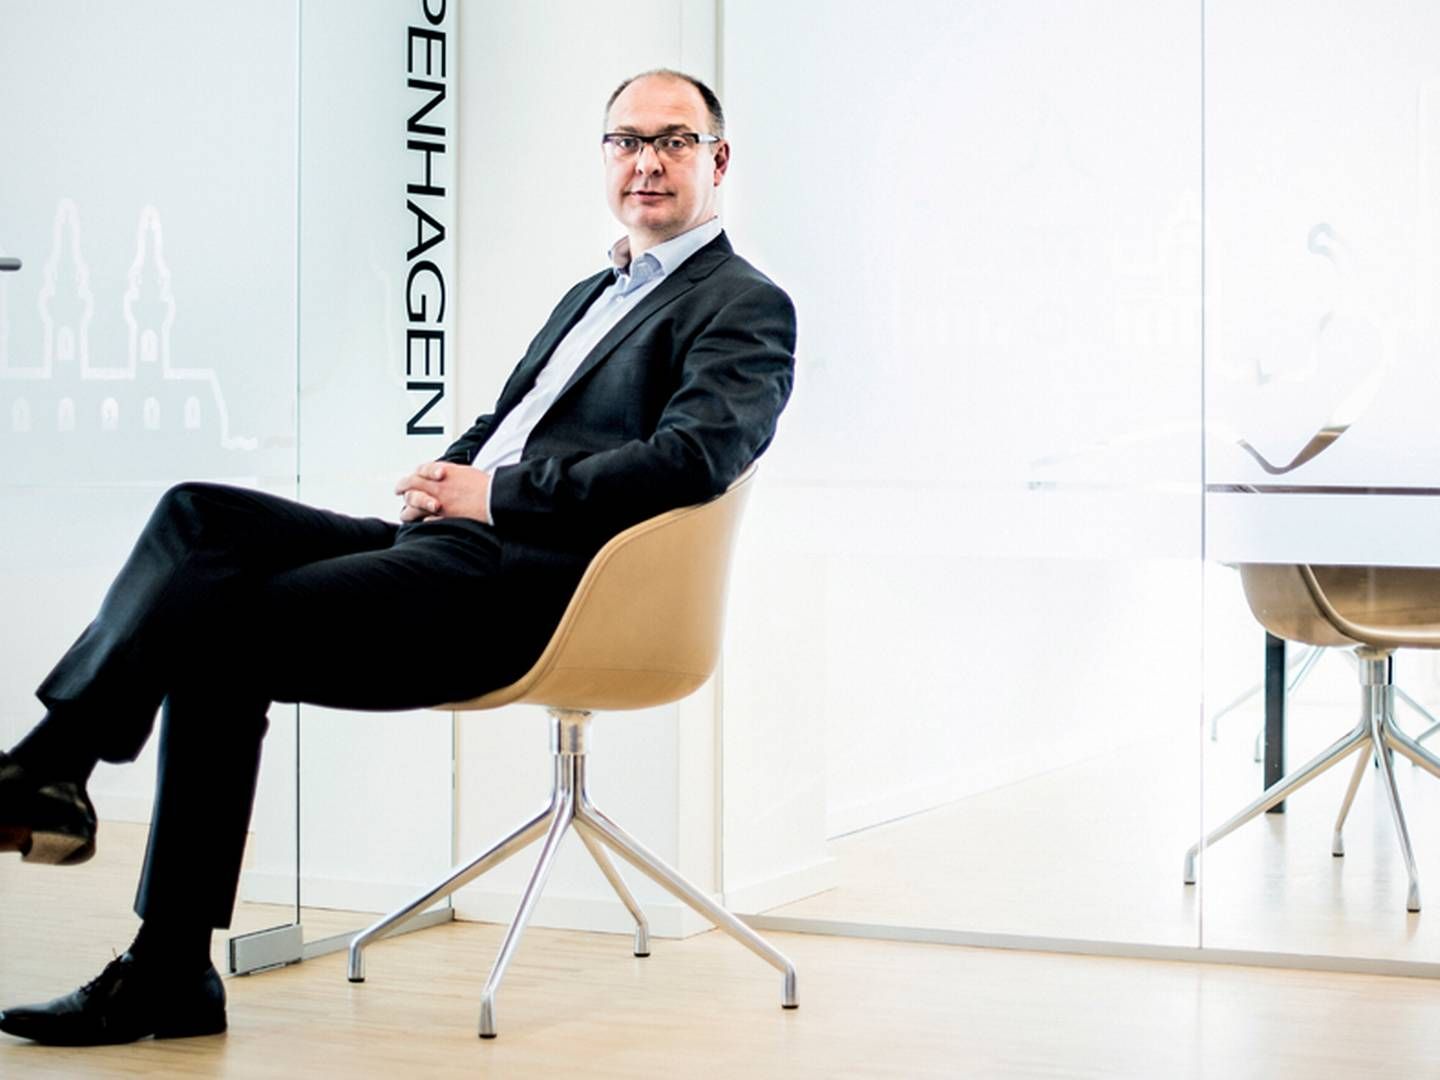 Siteimprove med direktør Morten Ebbesen i spidsen er et af de danske it-selskaber, som oplever stor vækst - både i omsætningen og antallet af medarbejdere. | Foto: PR/Siteimprove